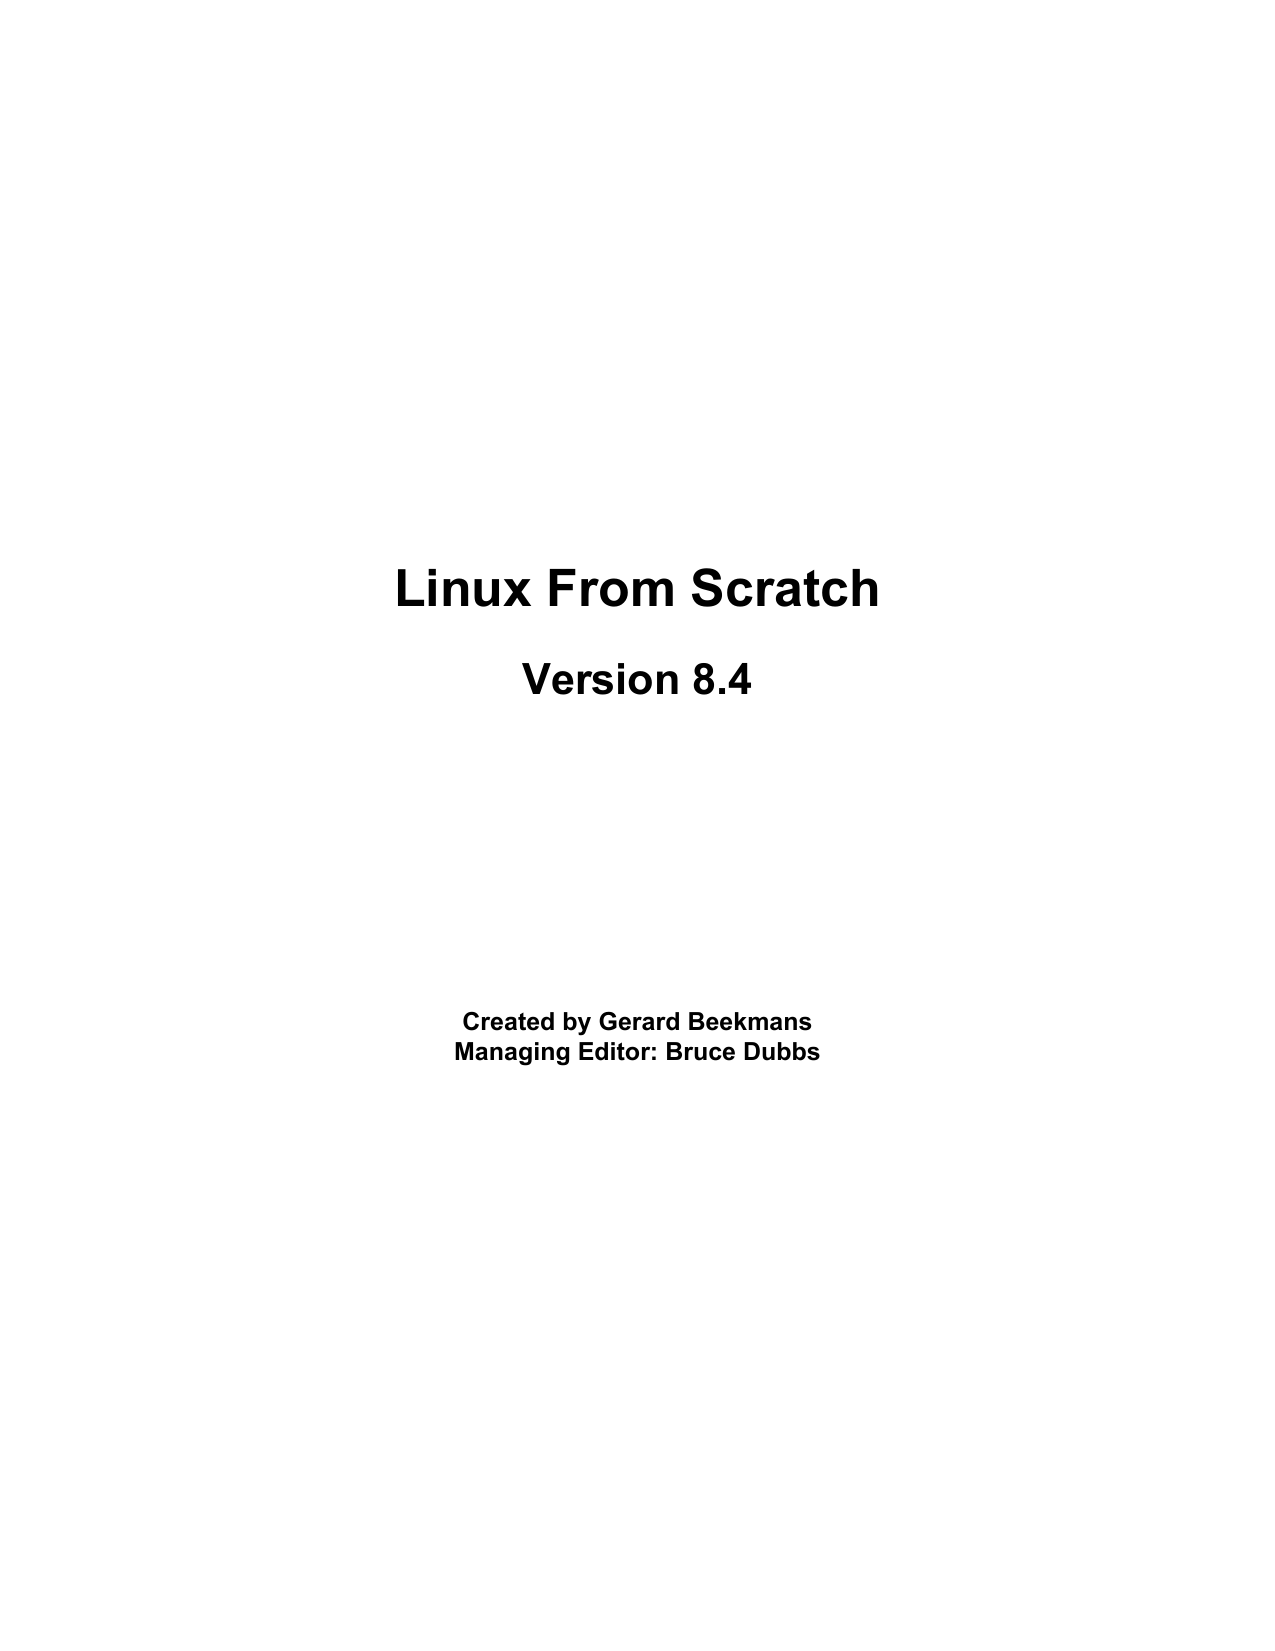 1275px x 1651px - LinuxFromScratch-BOOK-8.4